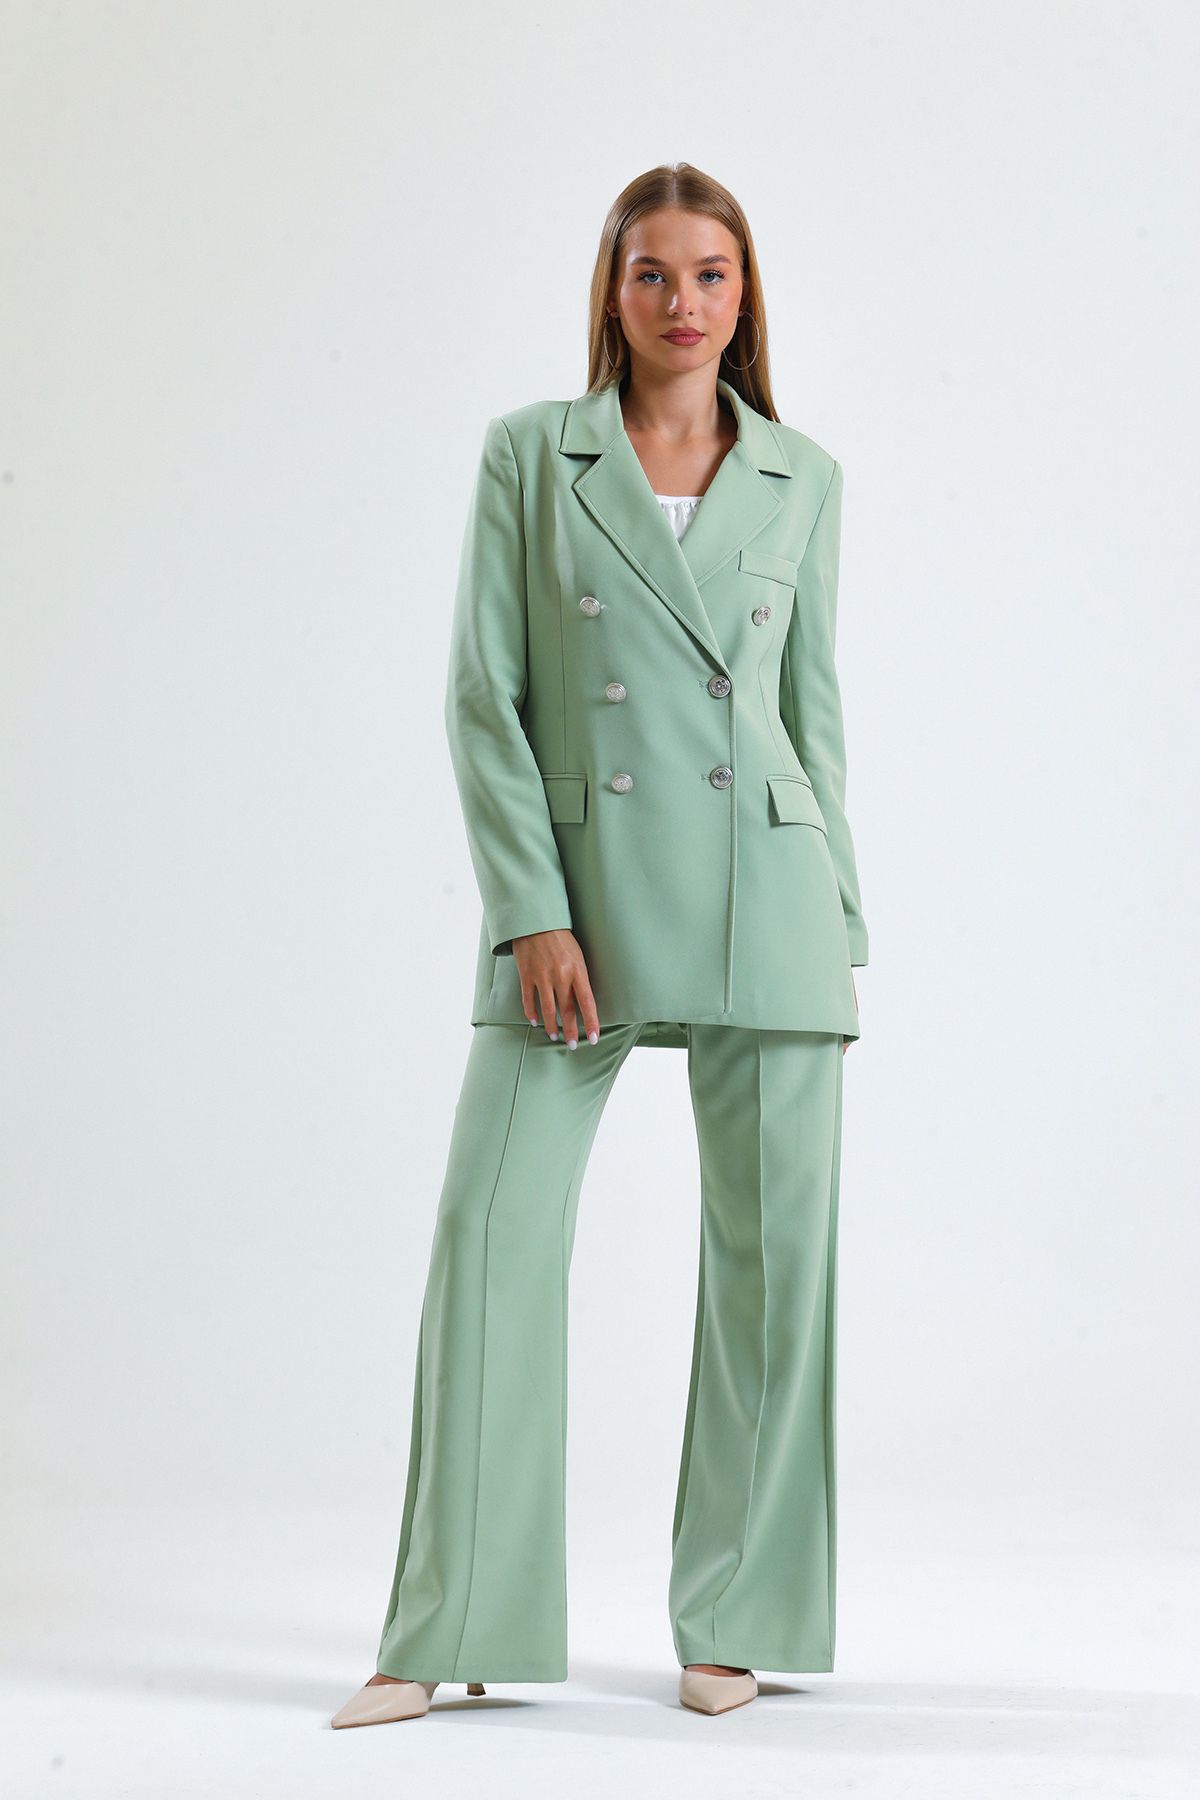 Sense Kadın Takım Elbise Ceket Ve Pantolon | TK34239 Küf Yeşili